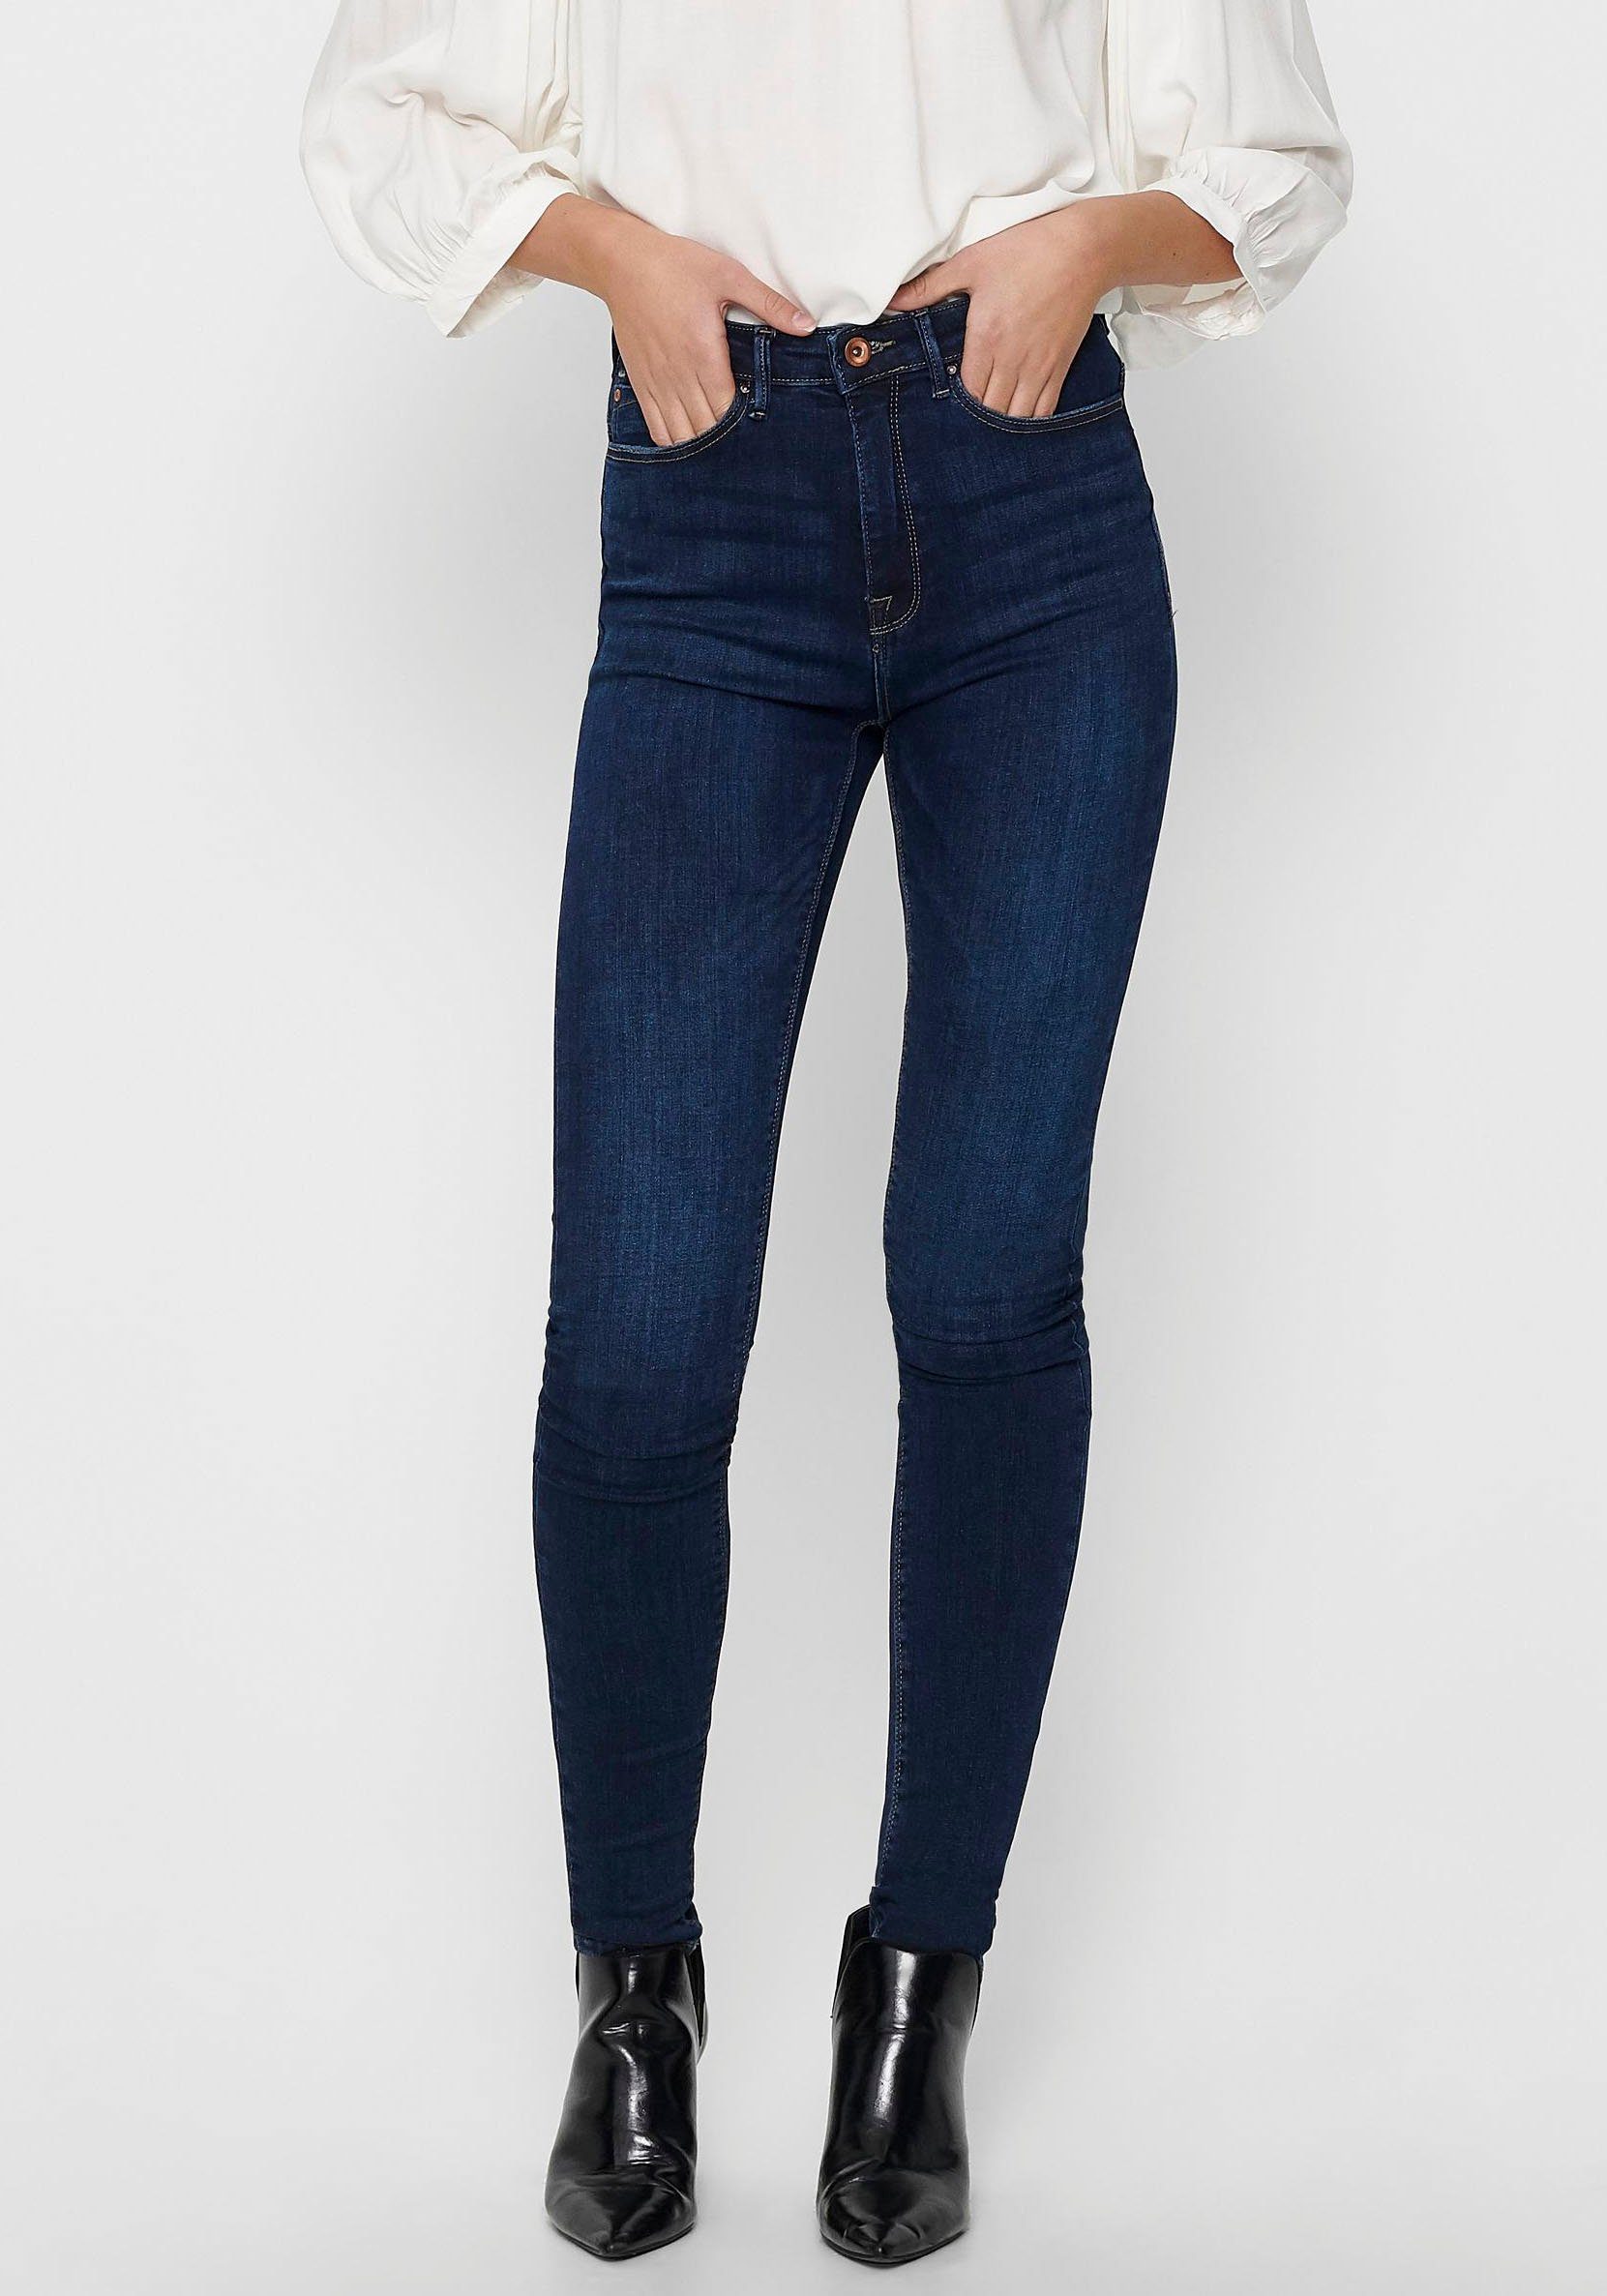 Blaue Jeans online kaufen | OTTO